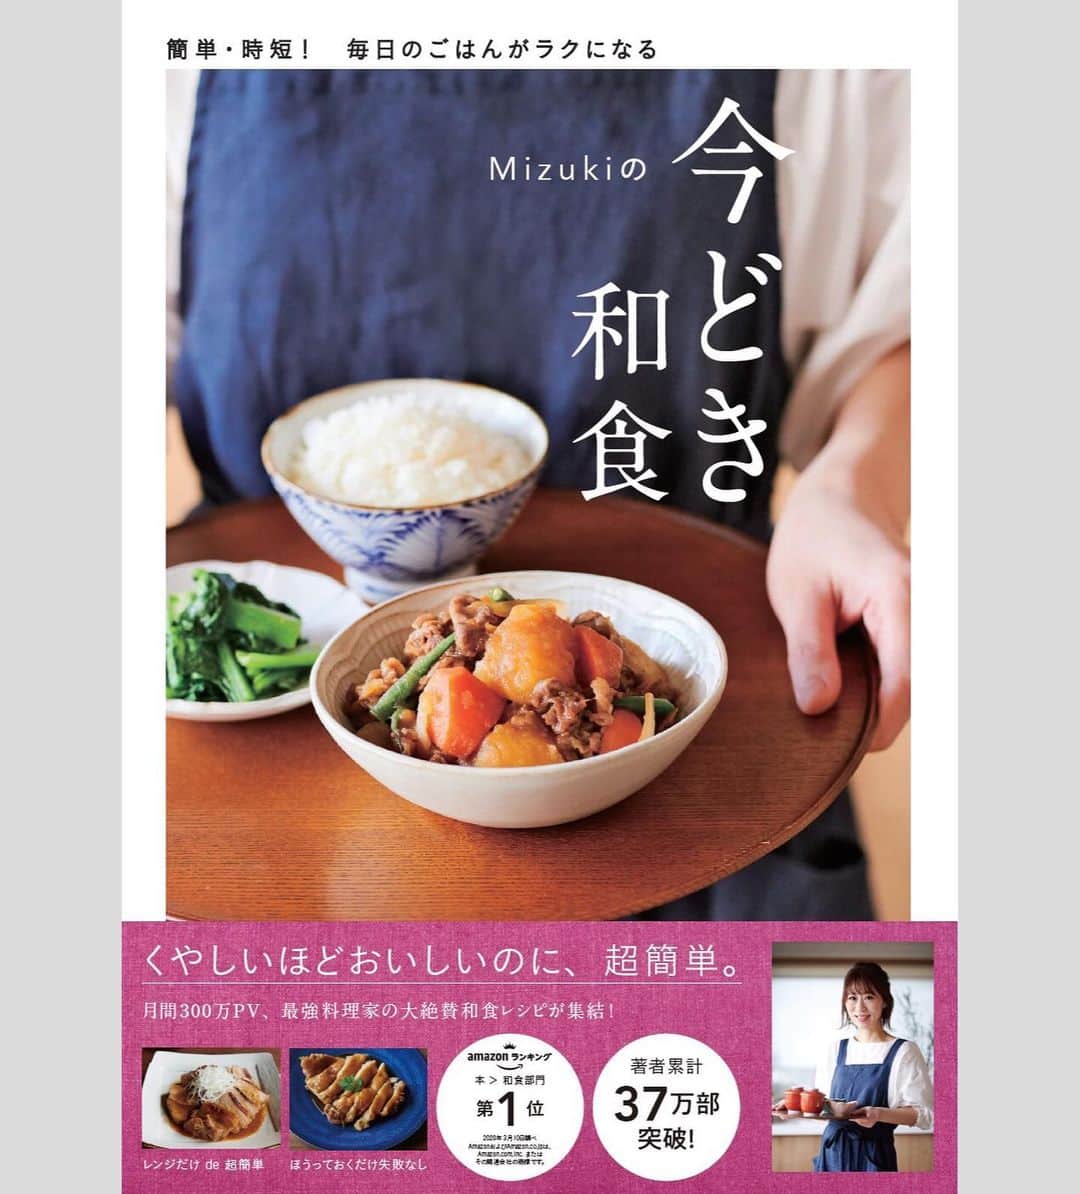 Mizuki【料理ブロガー・簡単レシピ】さんのインスタグラム写真 - (Mizuki【料理ブロガー・簡単レシピ】Instagram)「・﻿ 【レシピ】ーーーーーーーーーー﻿ ♡うまだれdeえのきの肉巻き♡﻿ ーーーーーーーーーーーーーーー﻿ ﻿ ﻿  おはようございます(*^^*)﻿ (昨日はインスタライブ🧁をご覧下さり﻿ ありがとうございましたm(_ _)m)﻿ ﻿ ﻿ 今日ご紹介させていただくのは﻿ えのきの肉巻き♡﻿ ヘルシーにかさ増しできて﻿ 見た目以上にボリュームがある﻿ 簡単節約おかずです(*´艸`)﻿ コクのあるうまだれで﻿ がっつりごはんがすすみますよ♩﻿ ﻿ フライパンひとつでできるので﻿ よかったらお試し下さいね(*^^*)﻿ ﻿ ﻿ ﻿ ーーーーーーーーーーーーーーーーーーーー﻿ 【2人分】﻿ 豚バラ薄切り肉...6枚﻿ えのき...1袋(200g)﻿ 塩こしょう...少々﻿ 薄力粉...適量﻿ ごま油...小1﻿ ●醤油・みりん...各大1﻿ ●砂糖・オイスターソース...各小1﻿ (好みで)白ごま...適量﻿ ﻿ 1.えのきは石づきを除いて6等分に分ける。●は合わせておく。﻿ 2.豚肉でえのきをしっかり巻き、塩こしょうを振って薄力粉をまぶす。﻿ 3.フライパンにごま油を入れて中火で熱し、2を巻き終わりから焼く。焼き色が付いたら転がしながら焼き、火が通ったら●を加えて煮からめる。﻿ 4.器に盛り、ごまを振る。﻿ ーーーーーーーーーーーーーーーーーーーー﻿ ﻿ ﻿ ﻿ 《ポイント》﻿ ♦︎豚肉は広げて置き、手前にえのきをのせてきつめに巻いて下さい♩﻿ ♦︎食べやすい大きさに切ってから盛り付けるとお子さんも食べやすいです♩﻿ ﻿ ﻿ ﻿ ﻿ ﻿ ﻿ ＿＿＿＿＿＿＿＿＿＿＿＿＿＿＿＿＿＿＿﻿ 📕\ \ 新刊発売中 / /📕﻿ 簡単・時短！ 毎日のごはんがラクになる﻿ ✨🦋 【 #Mizukiの今どき和食 】🦋✨﻿ ＿＿＿＿＿＿＿＿＿＿＿＿＿＿＿＿＿＿＿﻿ ﻿ なるべく少ない材料で﻿ 手間も時間も省きながら﻿ 簡単にできるおいしい和食レシピ♩﻿ 簡単に失敗なくマスターできる一冊で﻿ もっと気軽に、カジュアルに﻿ 和食を楽しんで下さいね(*^^*)﻿ ﻿ ﻿ ーーー ⭐️PART.1 メインおかず ⭐️ーーー﻿ 素材別にレシピをご紹介しています♩﻿ 和食の定番から新定番まで﻿ どれも押さえておきたいメニューばかり。﻿ 肉じゃがはフライパンで！焼き豚はレンジで！﻿ ぶり大根は切り身を使って手軽に作ります♩﻿ ﻿ ーーー ☘️PART.2 サブおかず ☘️ーーー﻿ 年中手に入るお手頃野菜と﻿ 乾物や大豆、こんにゃくなどを使った﻿ 副菜レシピをたっぷり掲載！！﻿ 普段SNSではメインおかずばかりなので﻿ 本では副菜にも力を入れています(*^^*)﻿ ﻿ ーーー 🌸PART.3 ごはんと汁物 🌸ーーー﻿ ささっと作れる丼と麺、﻿ みんなで食べたいいなり寿司や﻿ 手巻きごはんもご紹介！﻿ 複数の炊き込みごはんと﻿ 味噌汁&和風スープも盛りだくさん！﻿ ﻿ ﻿ 各レシピのポイントは﻿ 【写真付きで丁寧に解説】﻿ 副菜レシピもたっぷりなので﻿ 【メインページに副菜メモもつけました】﻿ ＊このメインにはこの副菜が合いますよ〜﻿ という献立の提案です(*^^*)﻿ 【その他コラムも充実】﻿ 全127品中ほぼ全て﻿ 【本だけのレシピです！】﻿ ＿＿＿＿＿＿＿＿＿＿＿＿＿＿＿＿＿＿＿﻿ ﻿ ⭐️ストーリー、ハイライト、プロフ画面に﻿ 本のURLを貼らせていただいております♩﻿ →(@mizuki_31cafe )﻿ ﻿ ﻿ ﻿ ﻿ ＿＿＿＿＿＿＿＿＿＿＿＿＿＿＿＿＿﻿ 🎀発売中🎀﻿ 【#ホットケーキミックスのお菓子 】﻿ ﻿ 一冊まるっとホケミスイーツ♩﻿ 普段のおやつから﻿ 特別な日にも使えるレシピを﻿ この一冊に詰め込みました(*^^*)﻿ ホットケーキミックスを使えば﻿ 簡単に本格的なお菓子が作れますよ♡﻿ ﻿ 🔹ハイライト、ストーリーに﻿ リンクを貼っています🔹﻿ ＿＿＿＿＿＿＿＿＿＿＿＿＿＿＿＿＿﻿ ﻿ ﻿ ﻿ ﻿ ﻿ ﻿ #肉巻き#ヘルシー#えのき#かさ増し#コスパ#豚肉#うちで過ごそう#おうち時間#Mizuki#簡単レシピ#時短レシピ#節約レシピ#料理#レシピ#フーディーテーブル#マカロニメイト#おうちごはん#おうちカフェ#デリスタグラマー#料理好きな人と繋がりたい#おうちごはんlover#foodpic#follow#cooking#recipe#lin_stagrammer#stayhome#うまだれでえのきの肉巻きm」5月11日 7時37分 - mizuki_31cafe